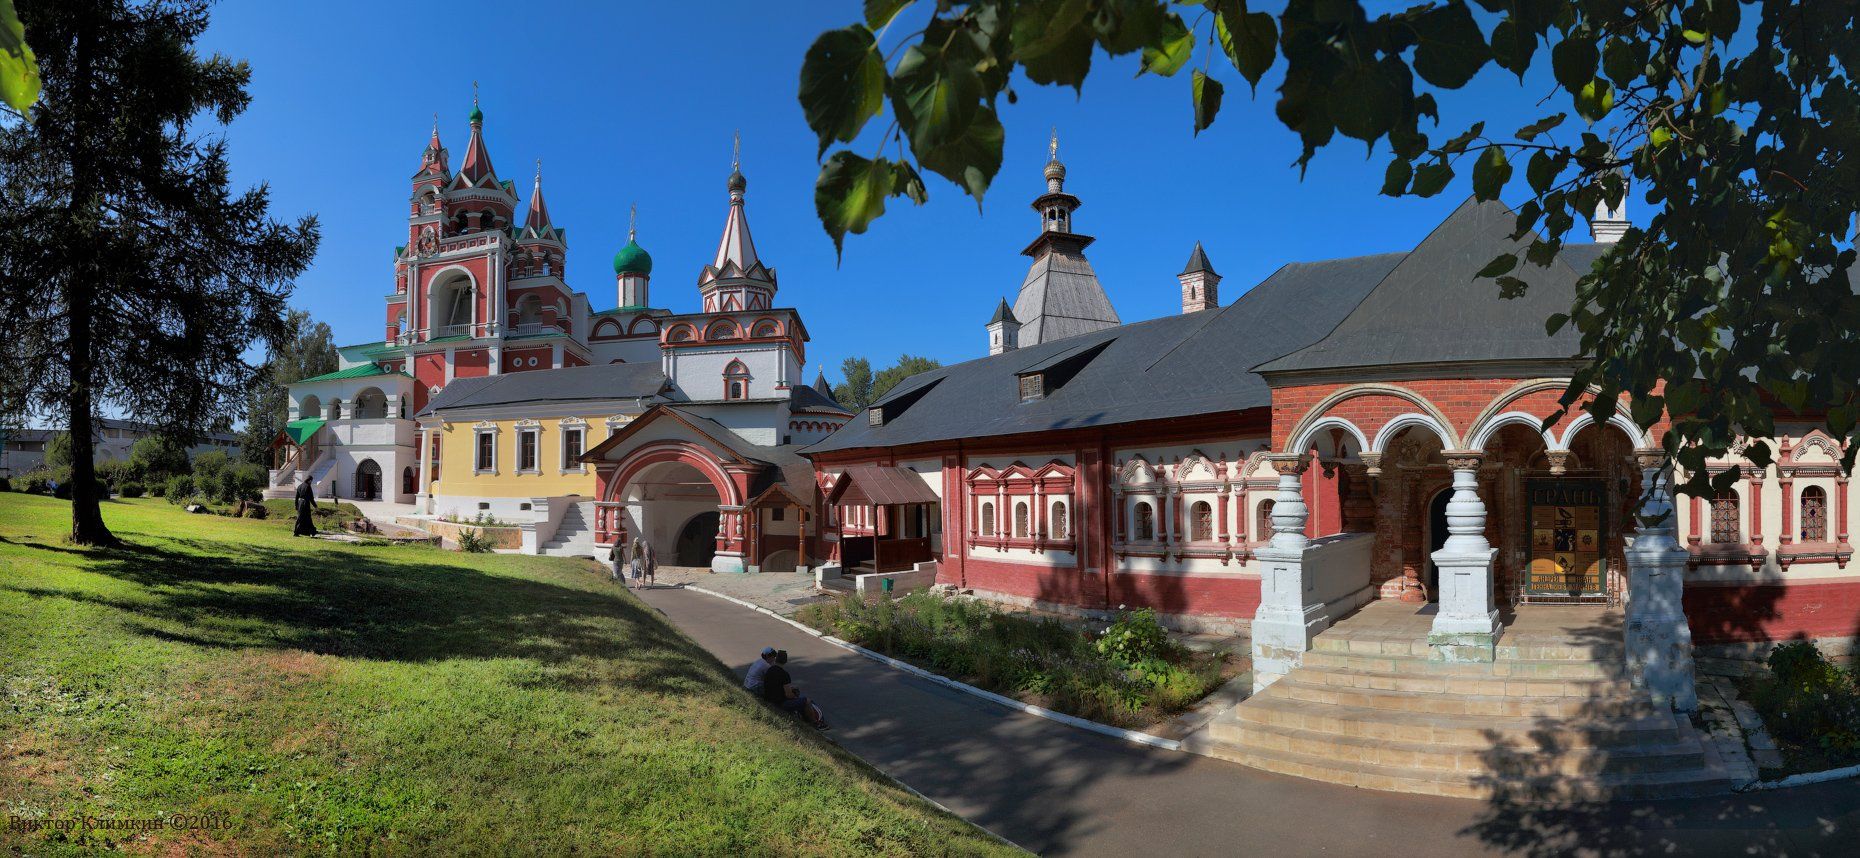 Звенигород, Монастырь, Православие, Саввино-Сторожевский монастырь, Виктор Климкин